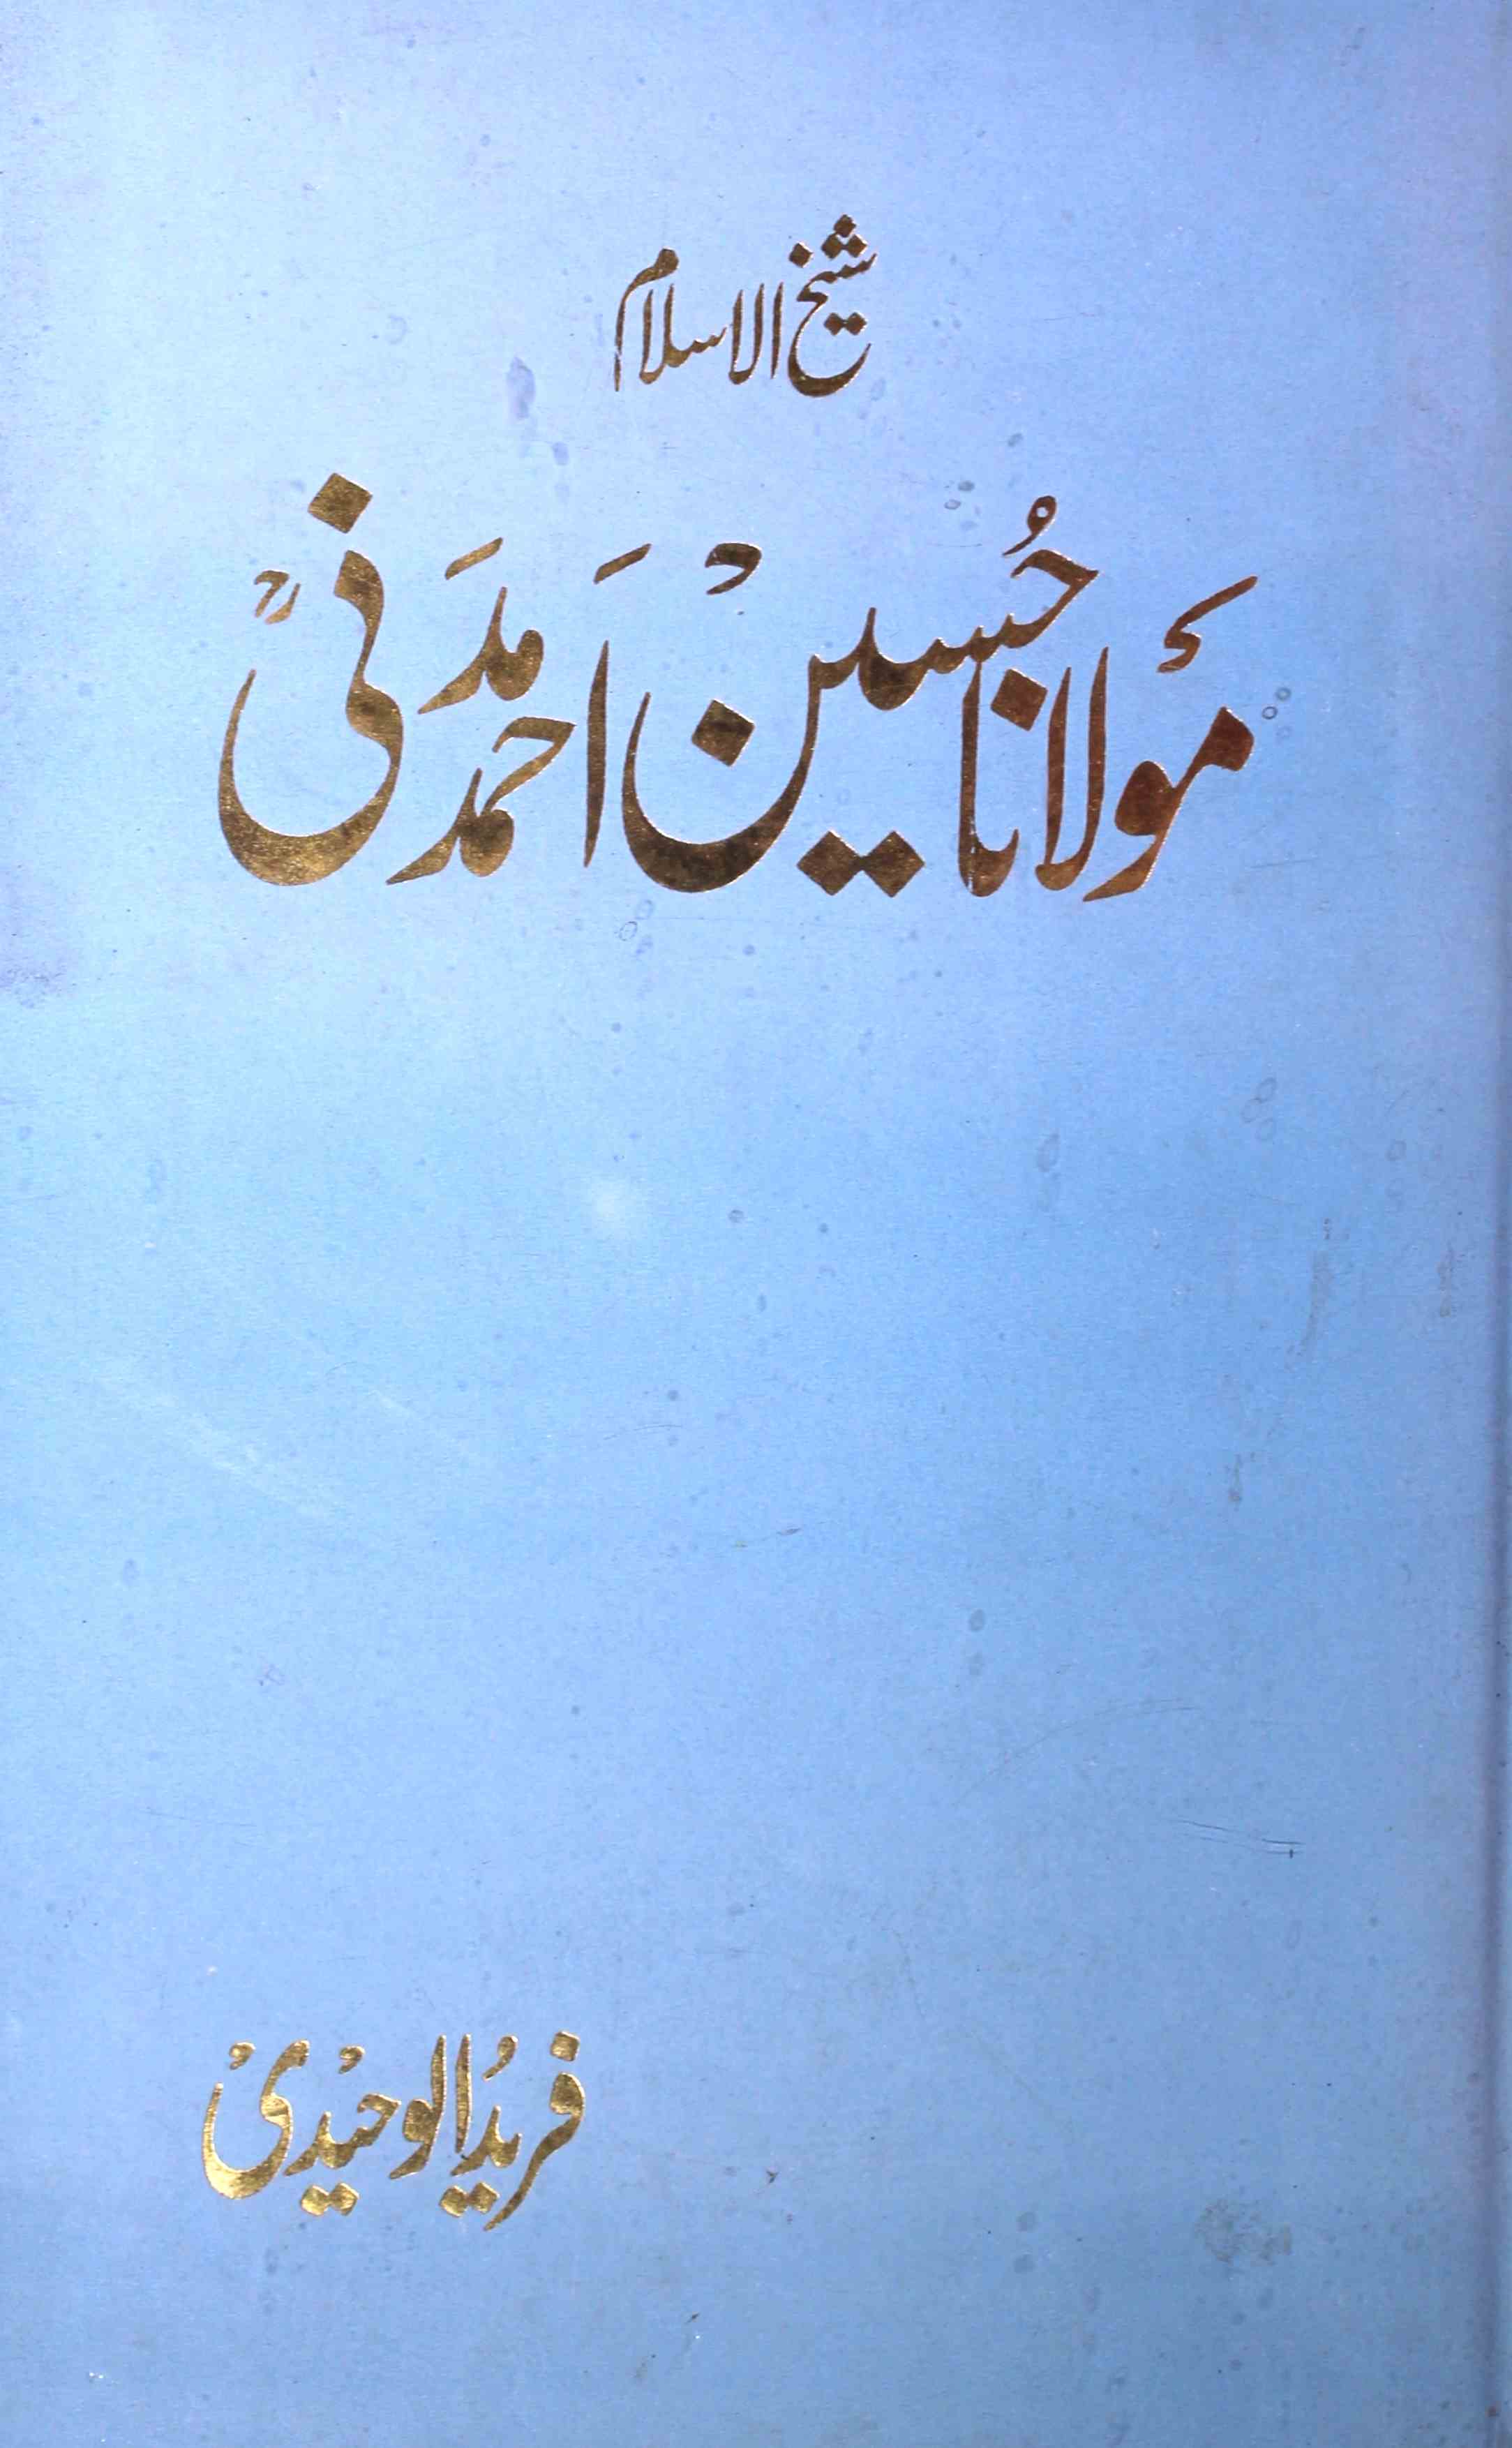 شیخ الاسلام مولانا حسین احمد مدنی ایک سوانحی و تاریخی مطالعہ